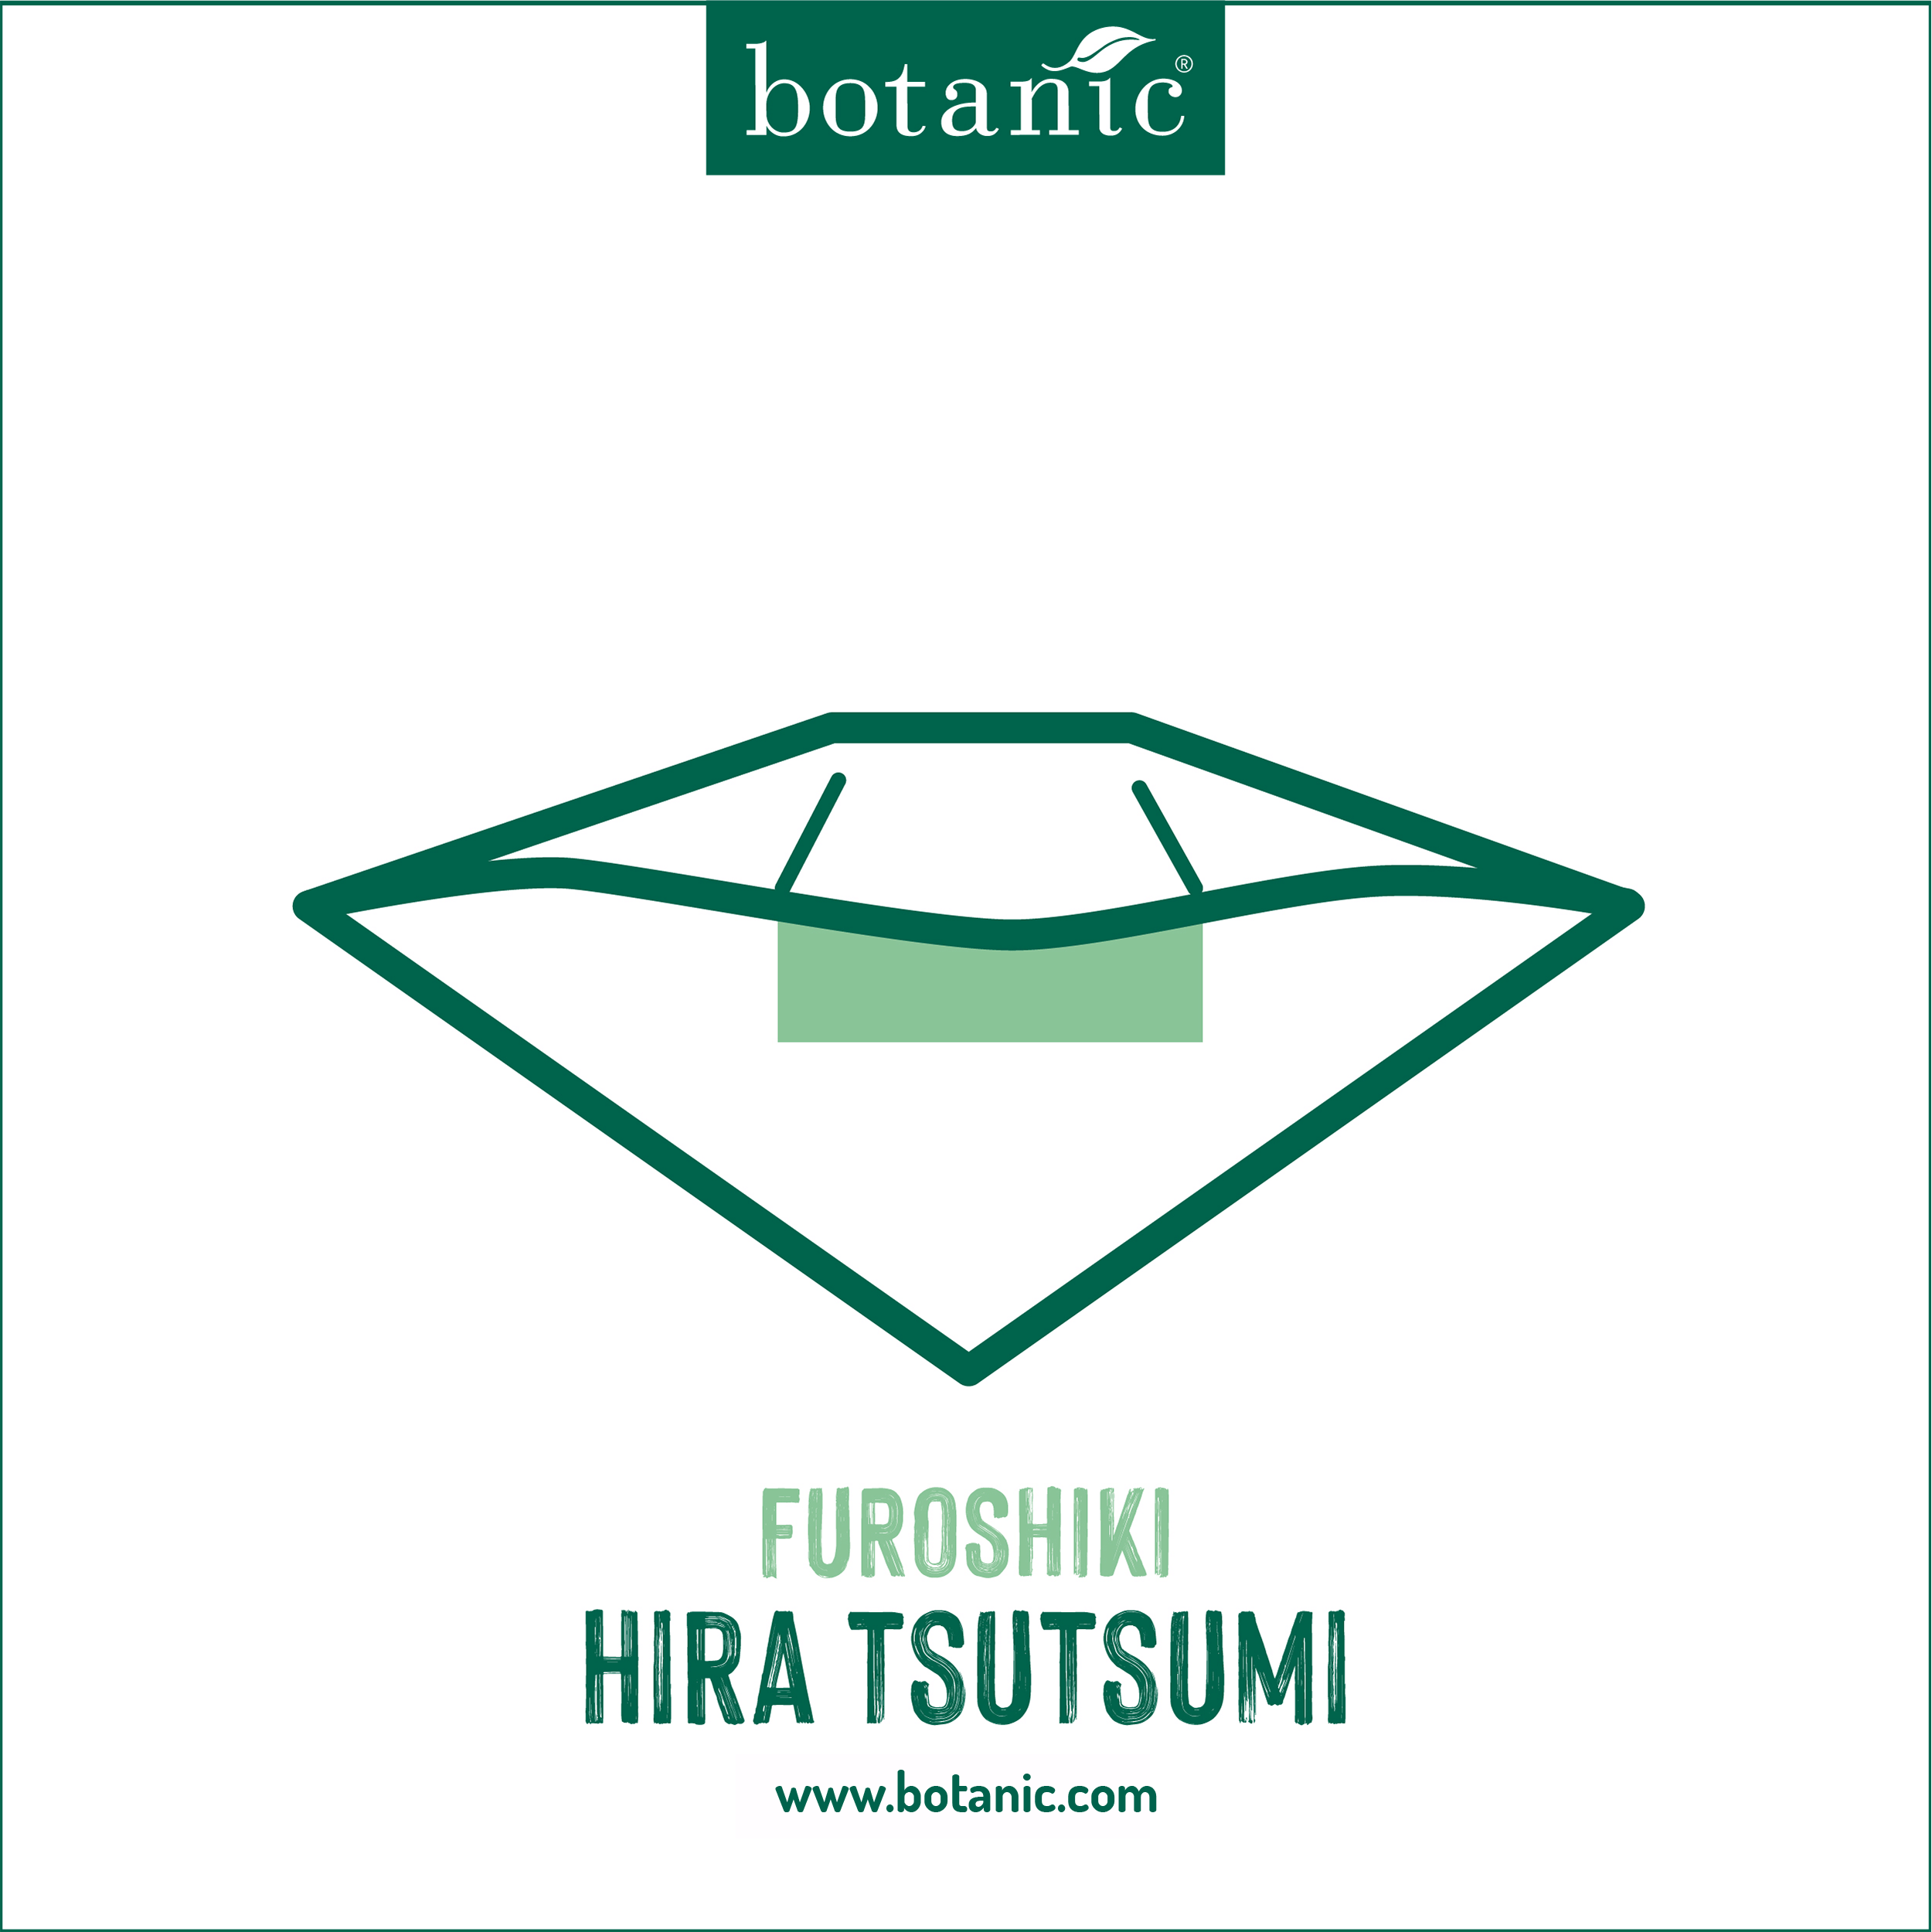 Furoshiki Hira Tsutsmu pour emballer vos cadeaux de forme rectangulaire